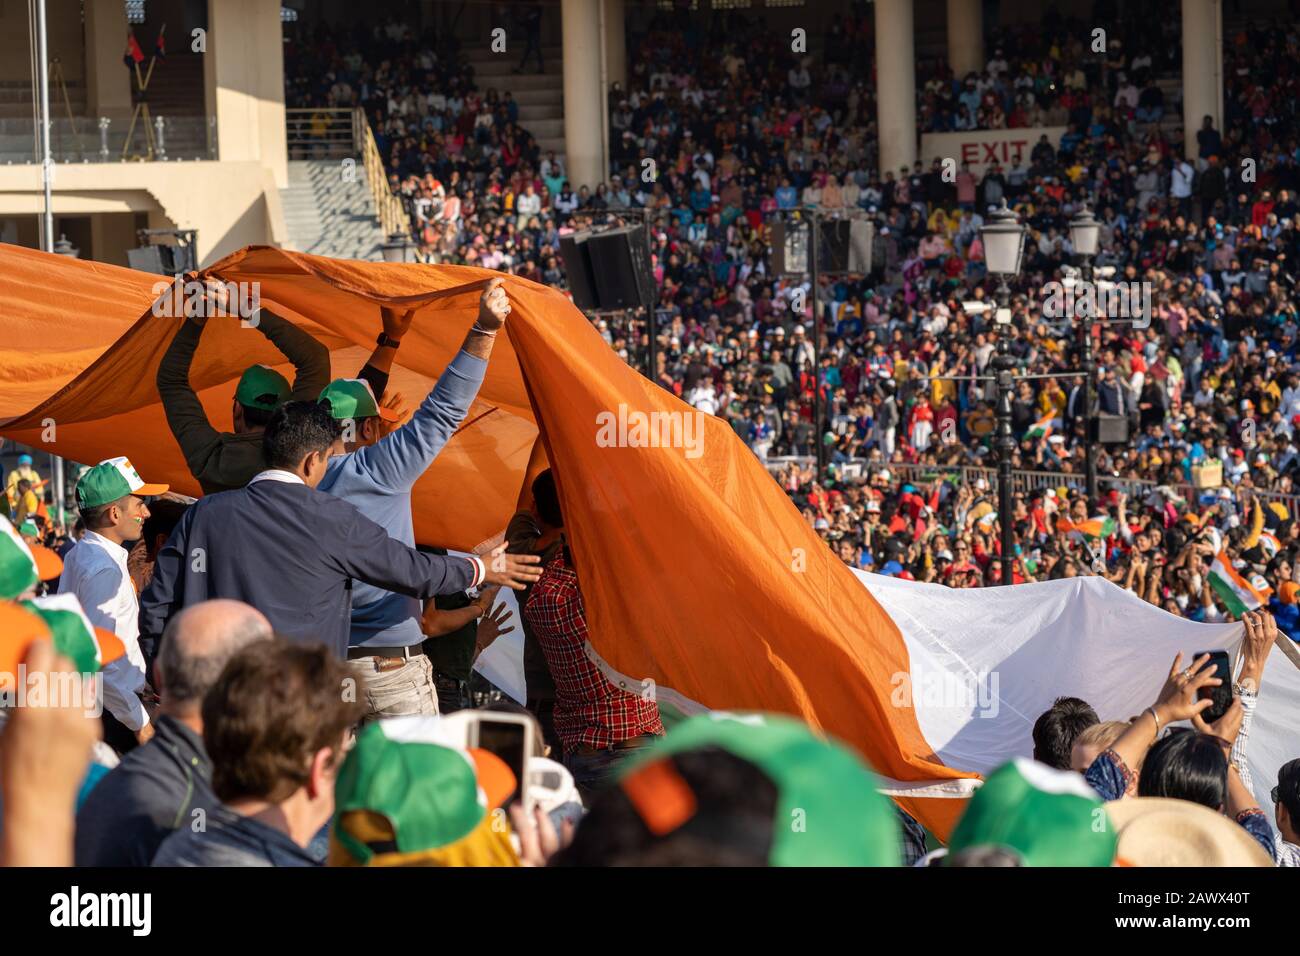 Amritsar, Indien - Februar 8, 2020: Die Menschenmassen im Stadion werden vorbeigeführt und halten eine indische Fahne zur Vorbereitung der Abschlussfeier der Grenze zu Wagah w Stockfoto